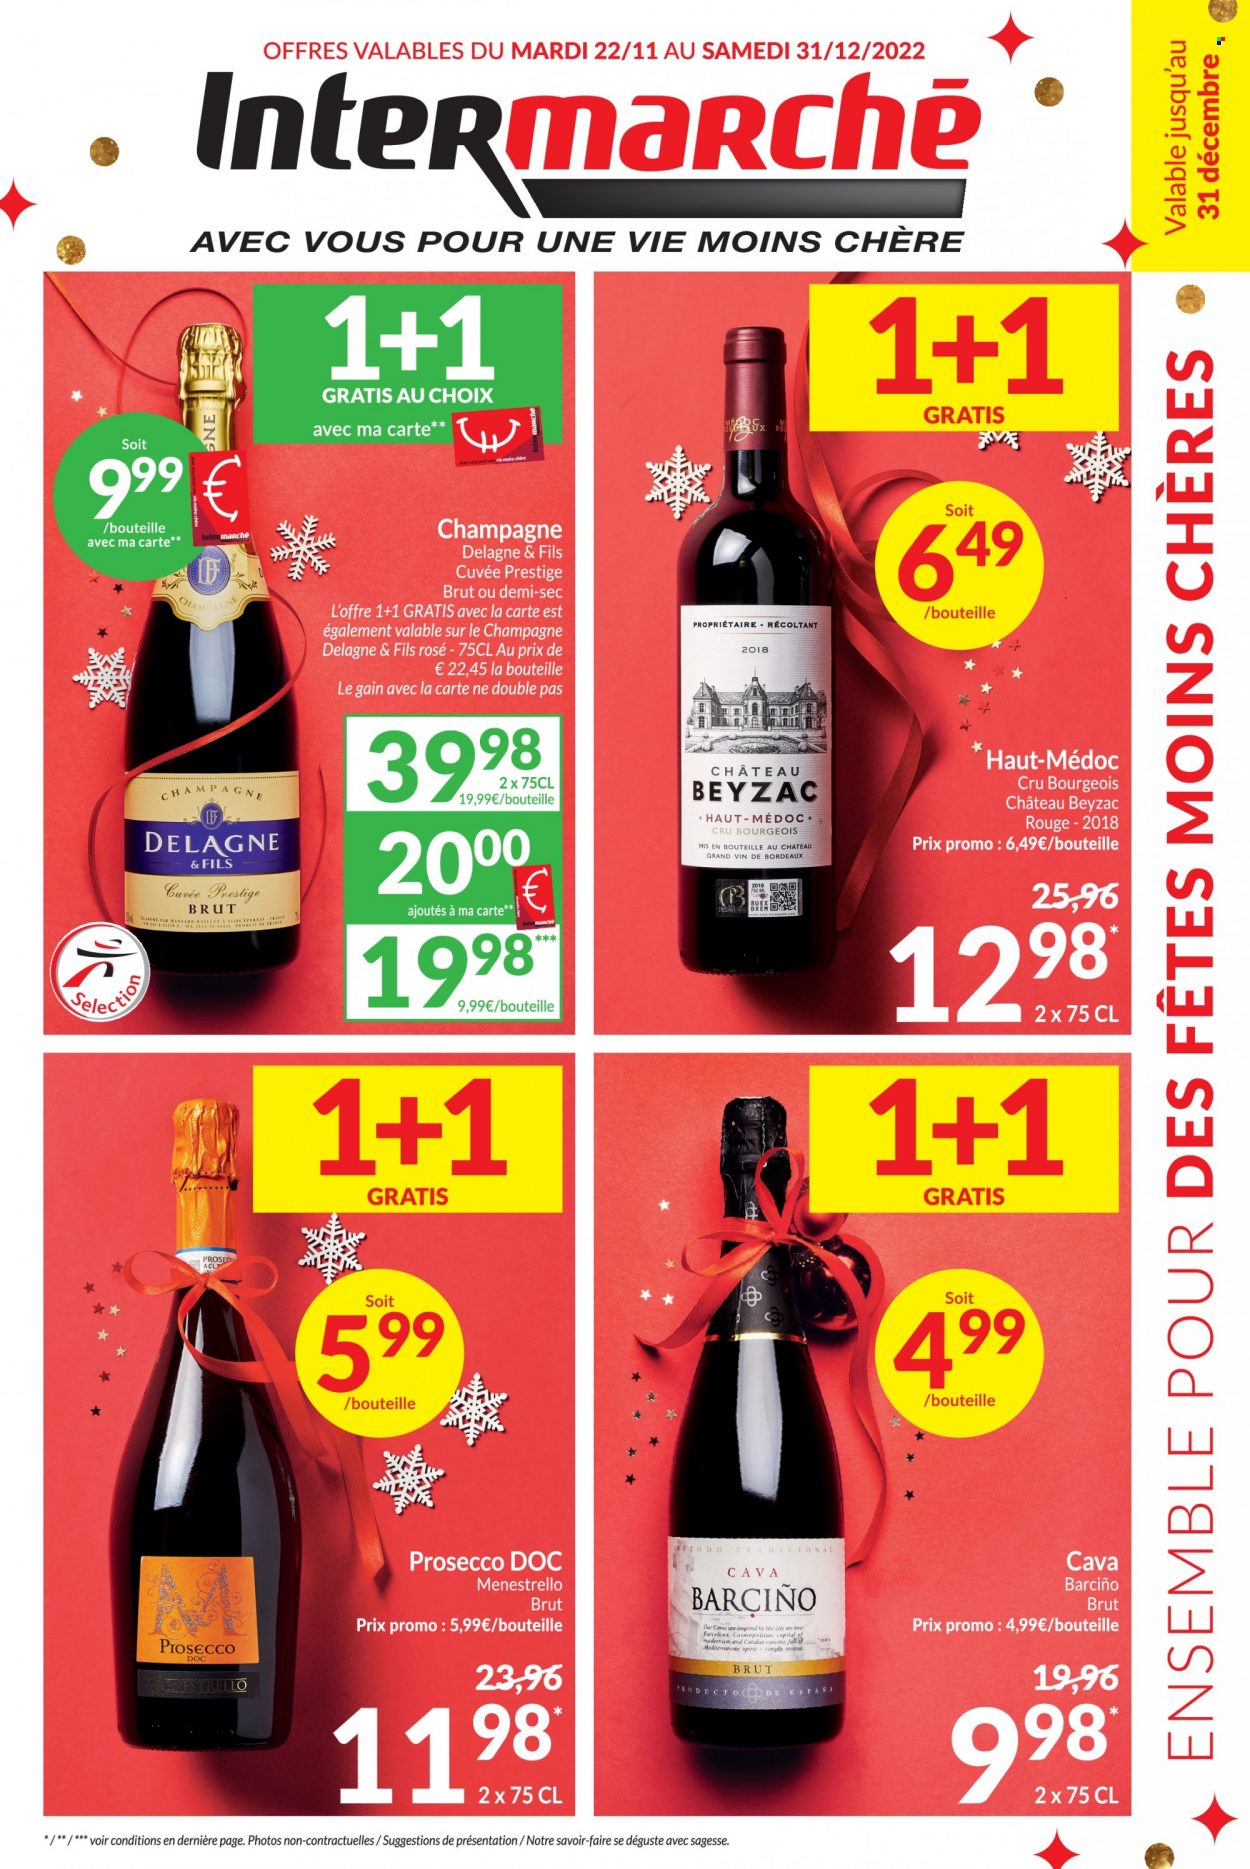 thumbnail - Catalogue Intermarché - 22/11/2022 - 31/12/2022 - Produits soldés - vin rouge, vin, Bordeaux, champagne, alcool, Prosecco. Page 1.